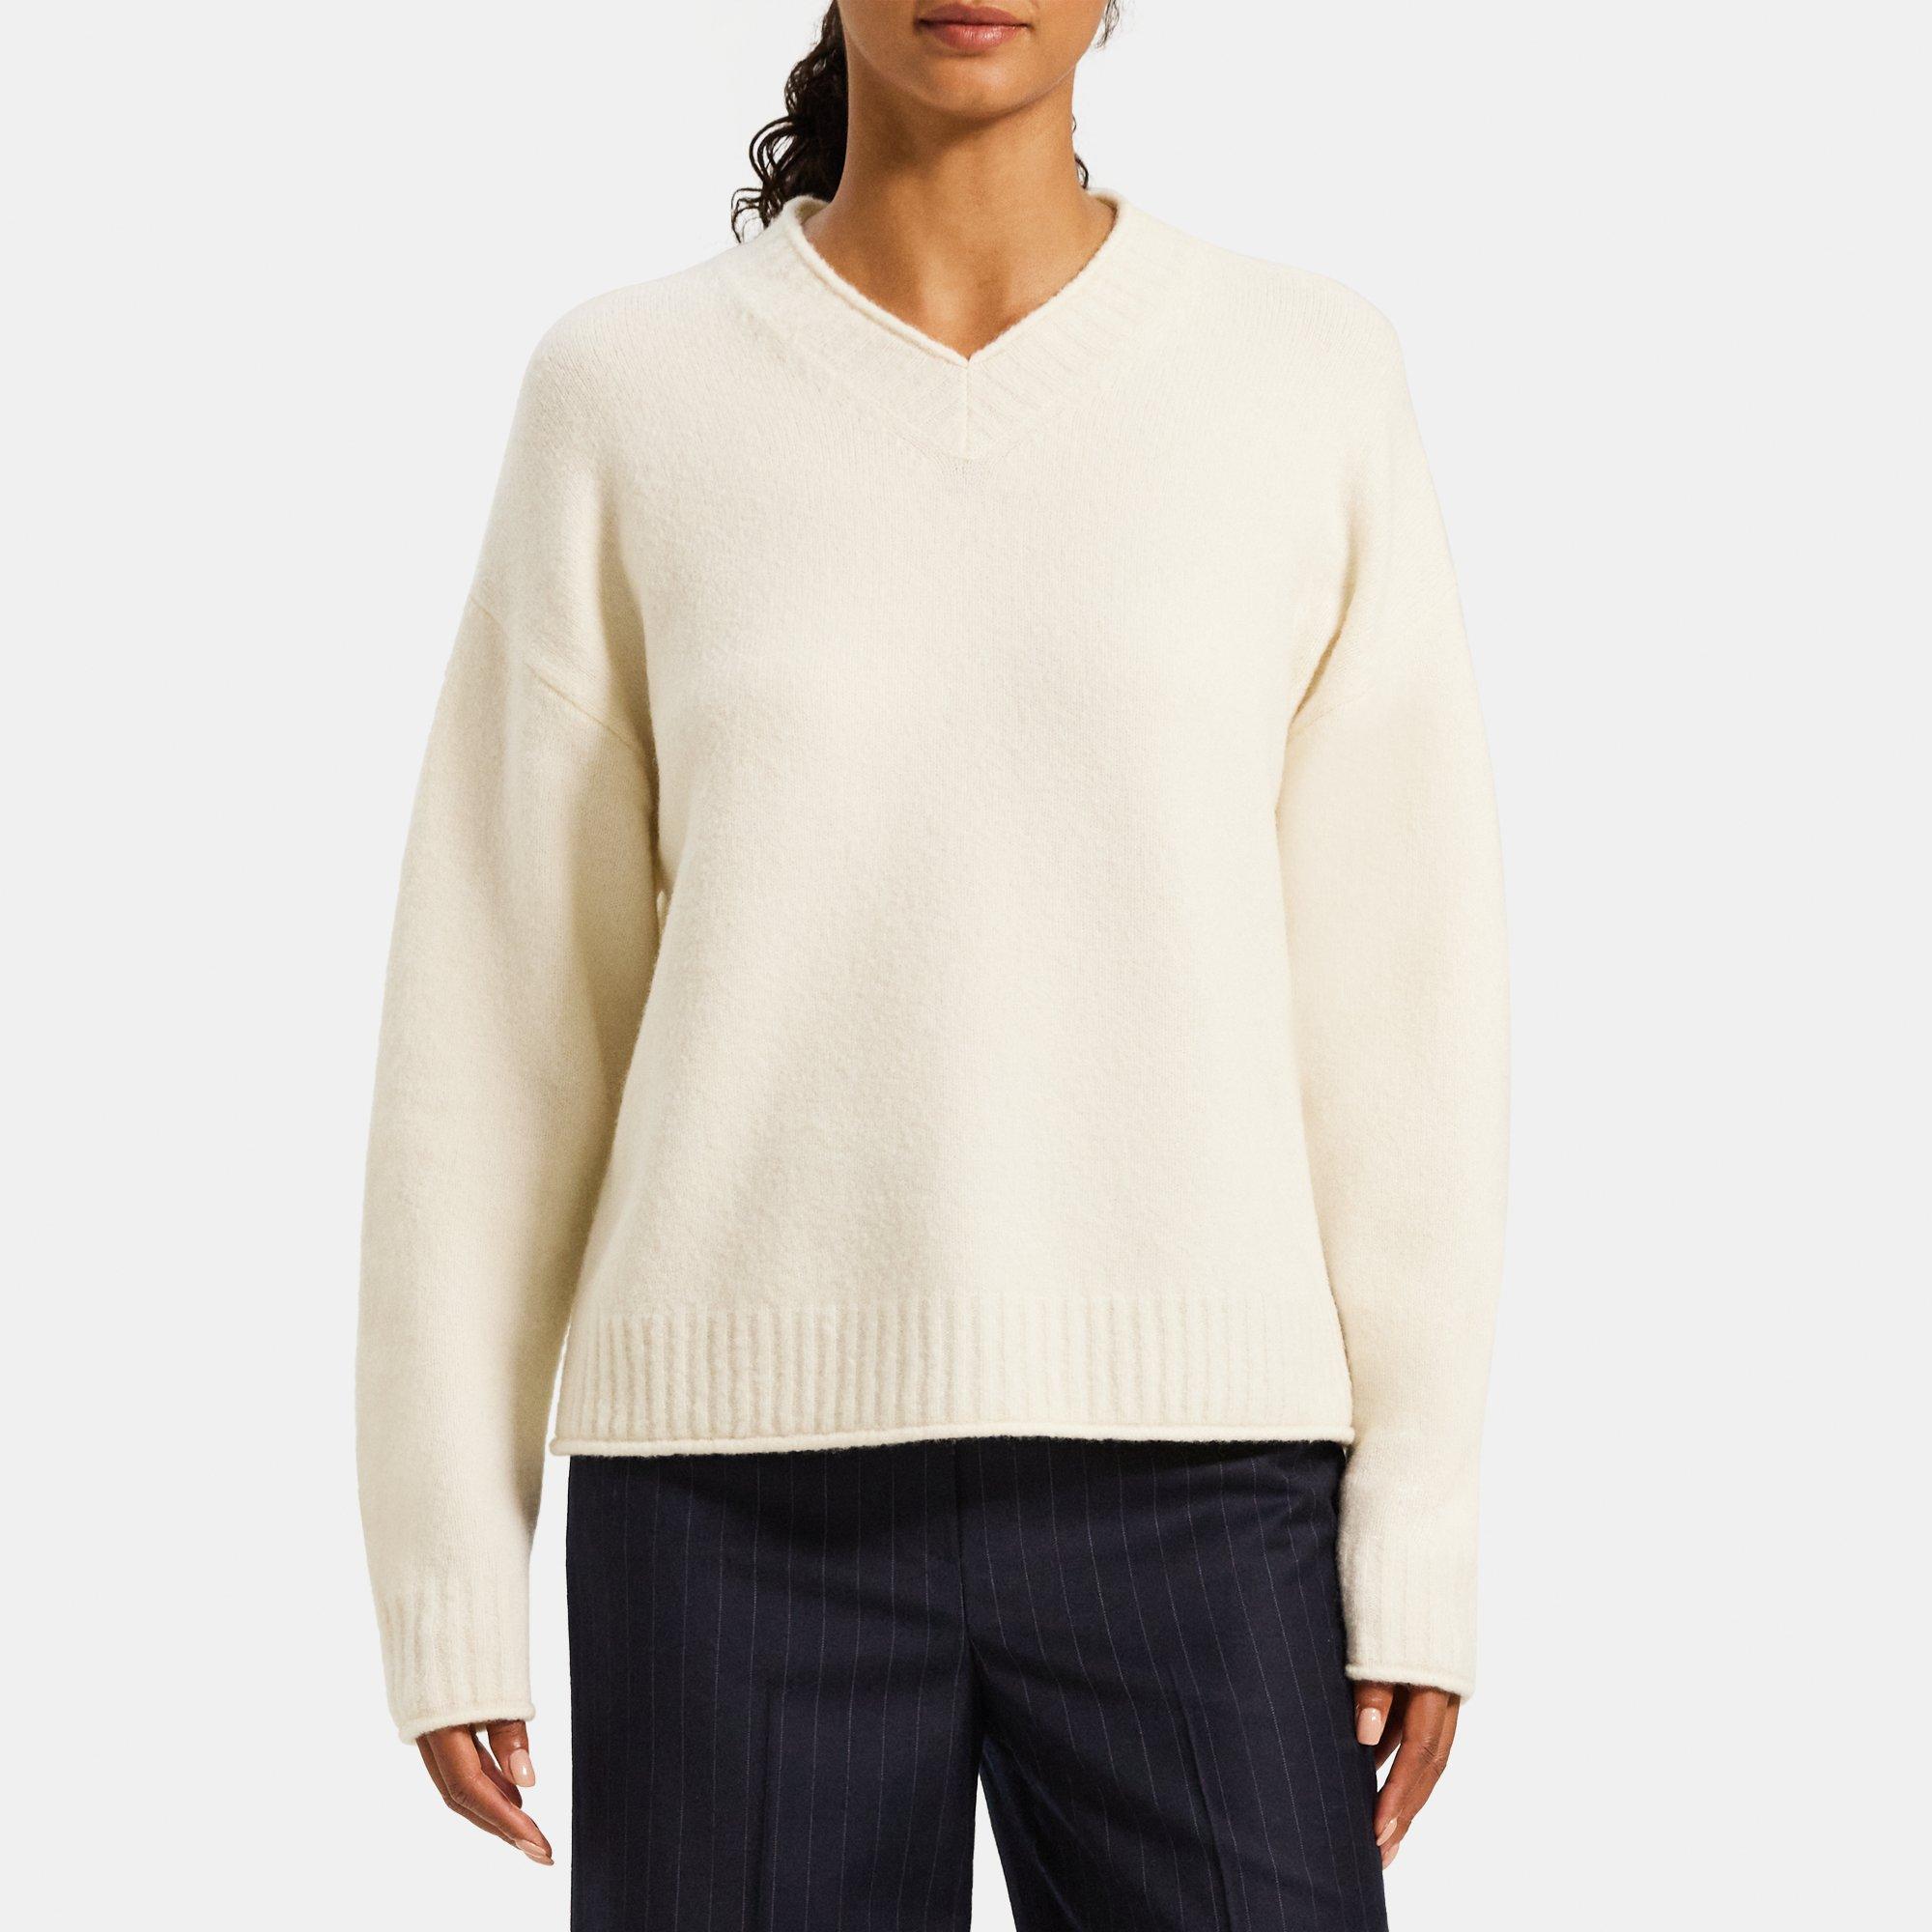 띠어리 Theory High V-Neck Sweater in Wool-Blend,IVORY